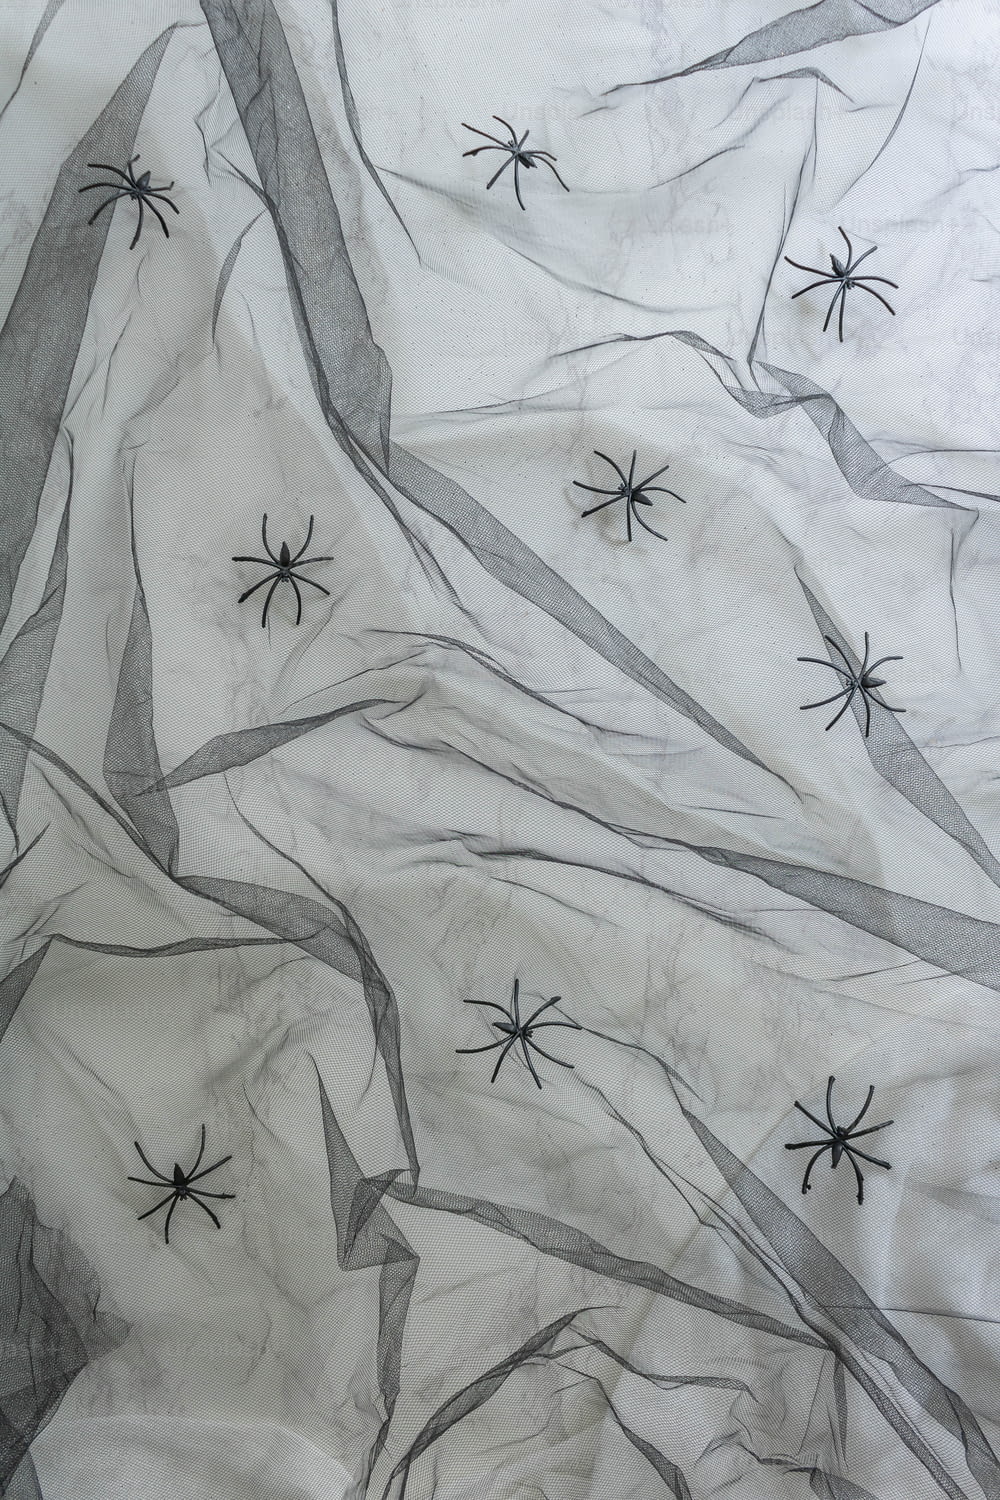 um desenho preto e branco de teias de aranha